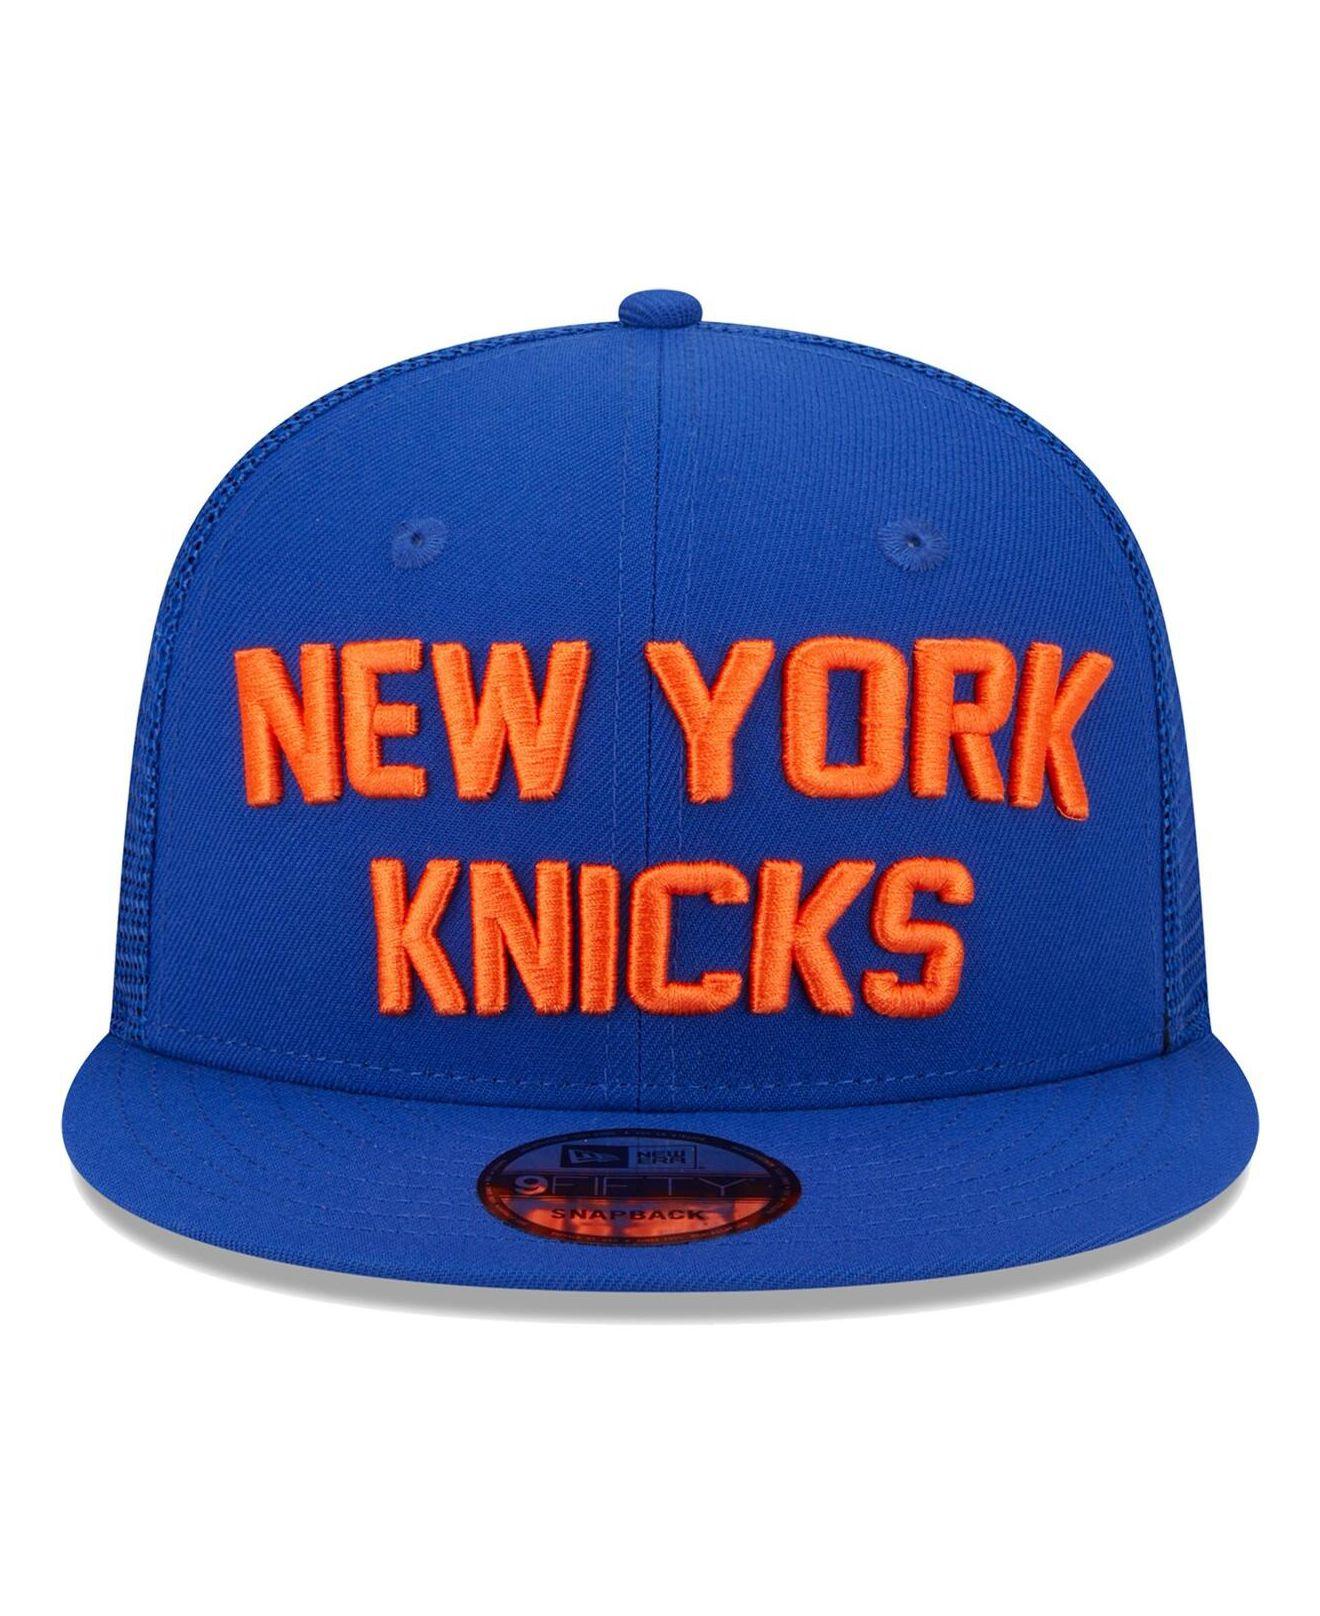 The Game New York Knicks Hat Snap back Hat Adjustable Blue Orange